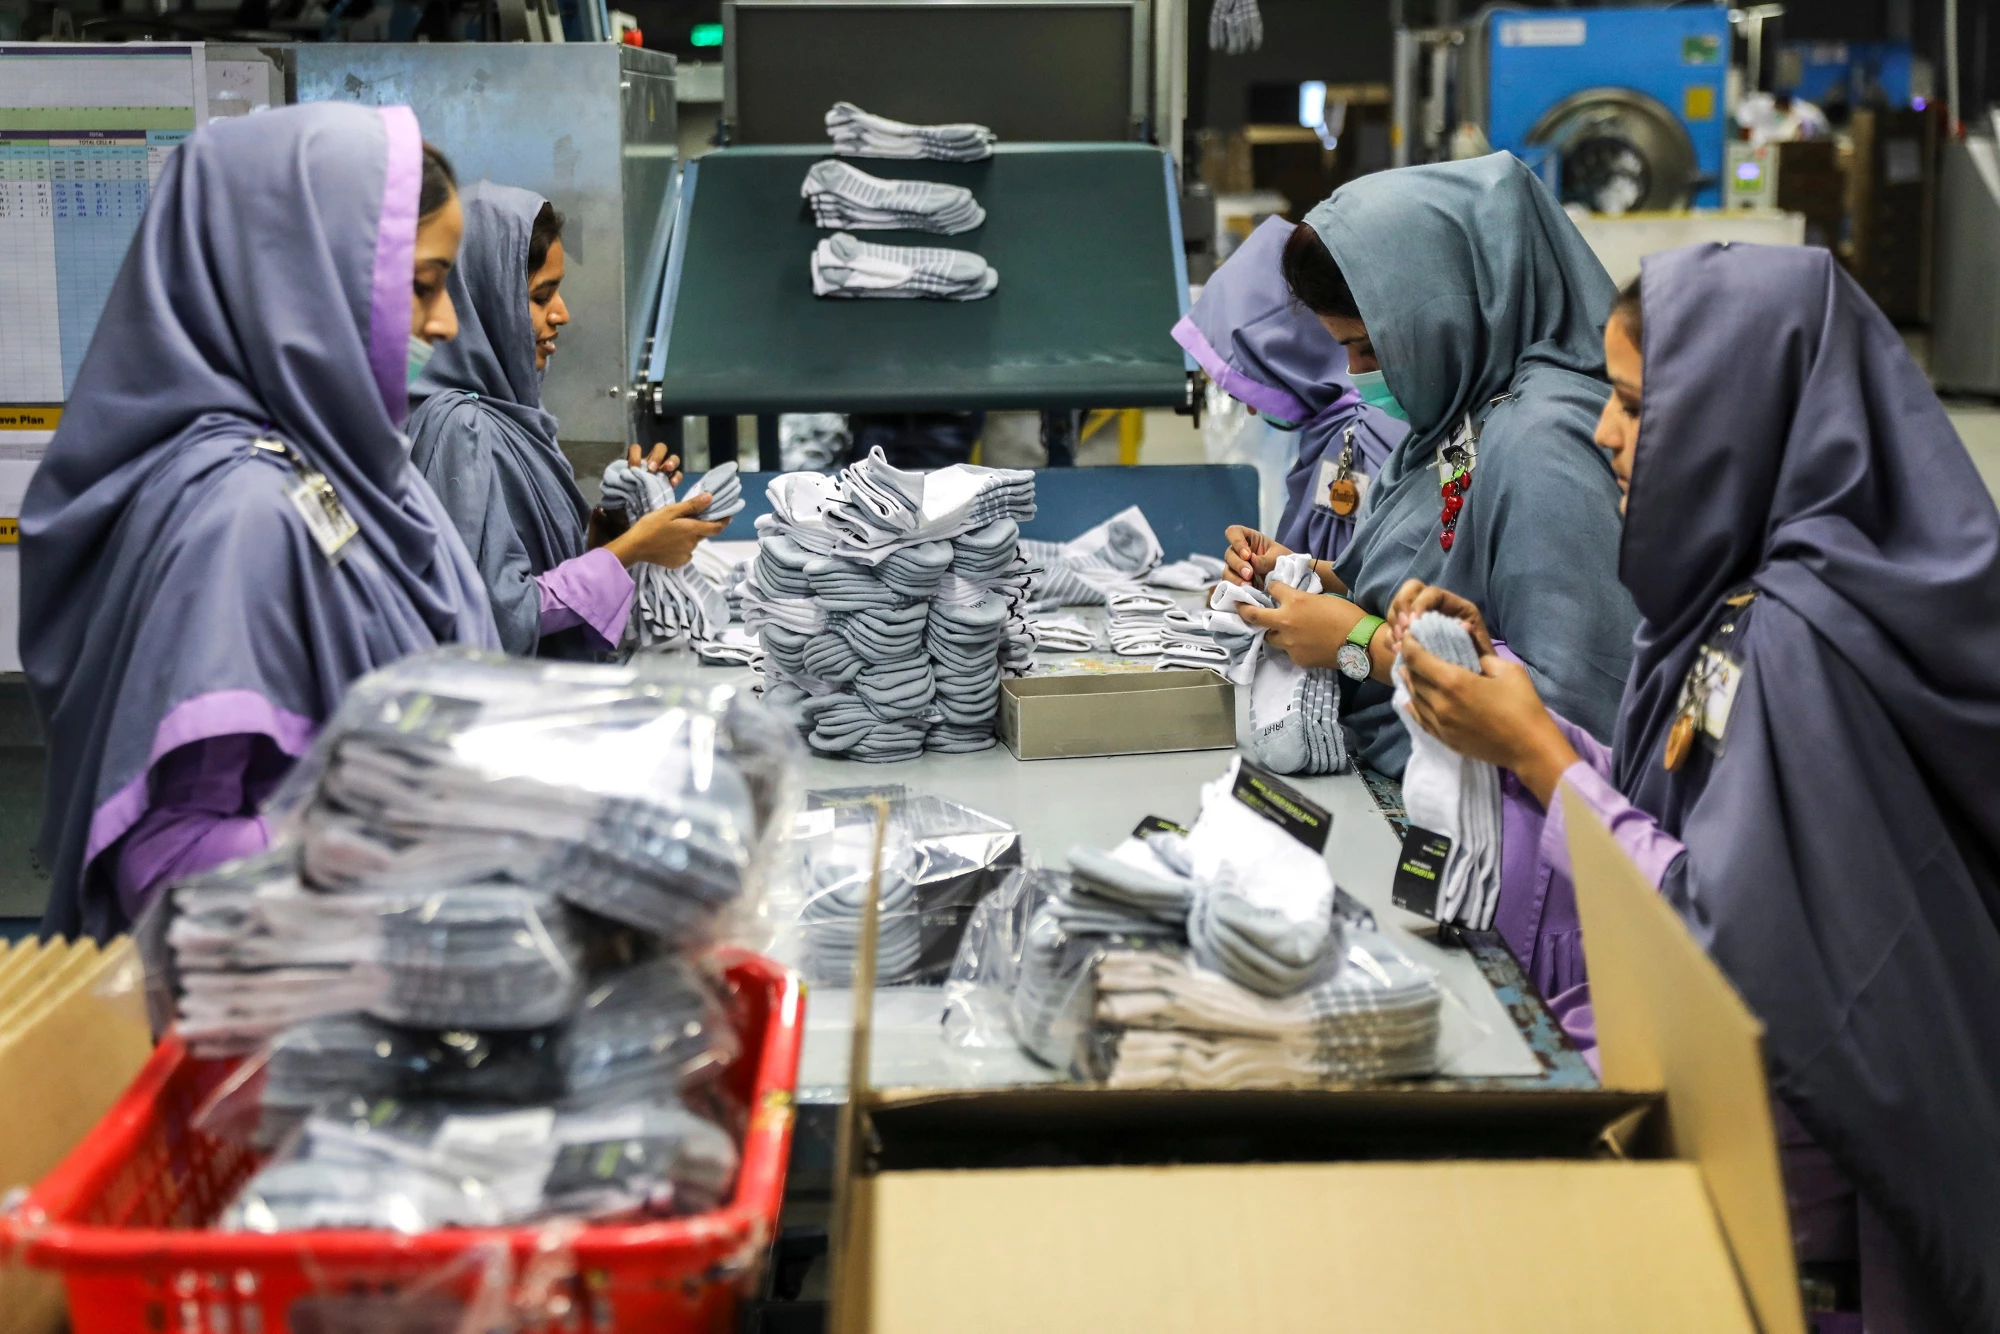 Un groupe de femmes travaillant dans une usine de textile (Pakistan) | Source : www.pakstockphoto.com | Photographe : Asad Zaidi